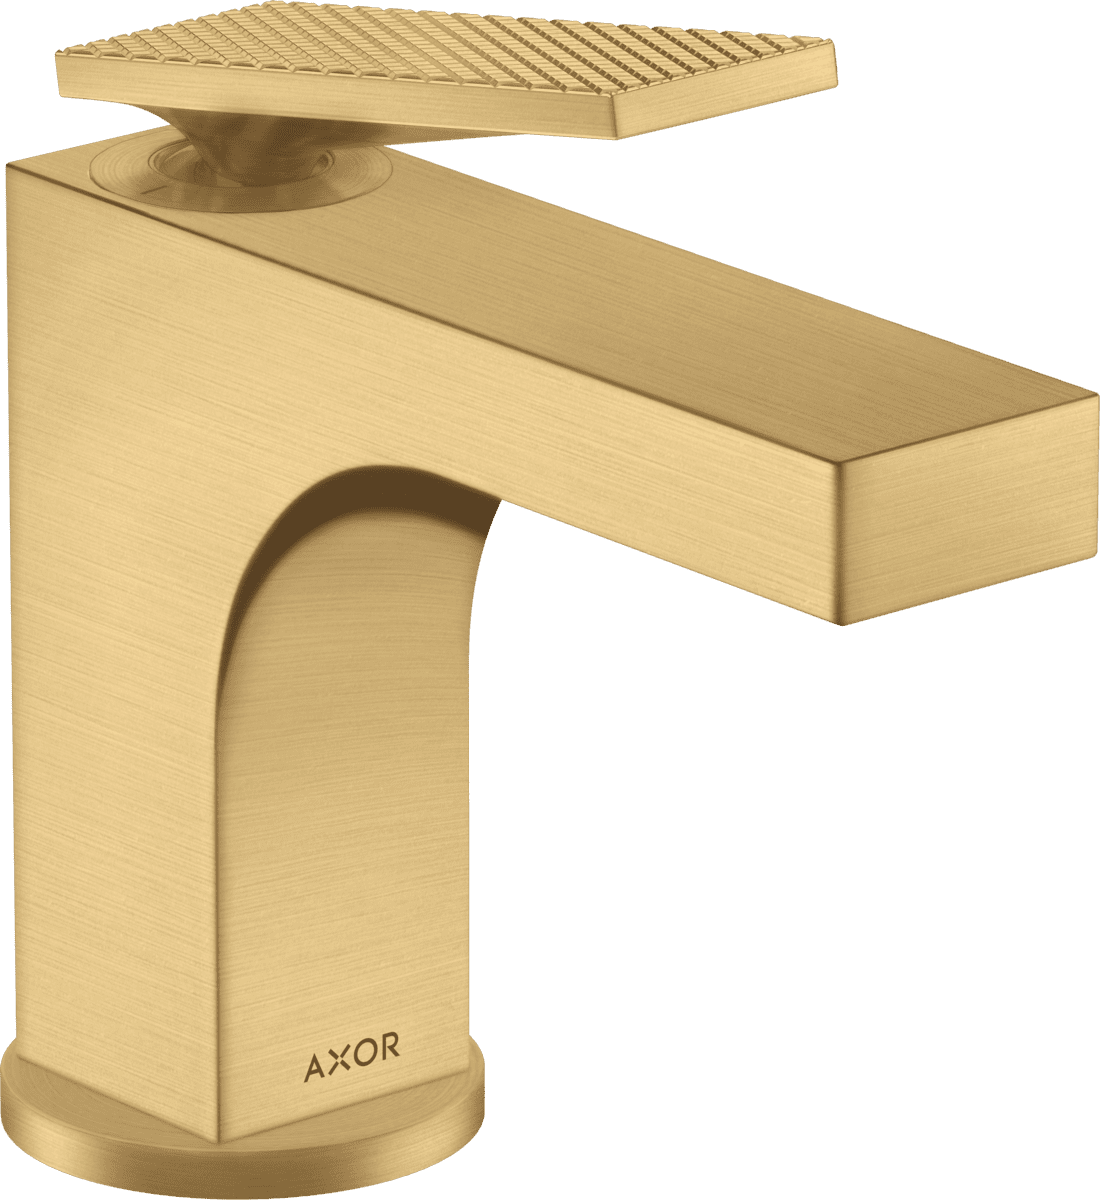 HANSGROHE AXOR Citterio Tek kollu lavabo bataryası 90, çubuk volan ile kumandalı-rhombic kesim #39001250 - Mat Altın Optik resmi